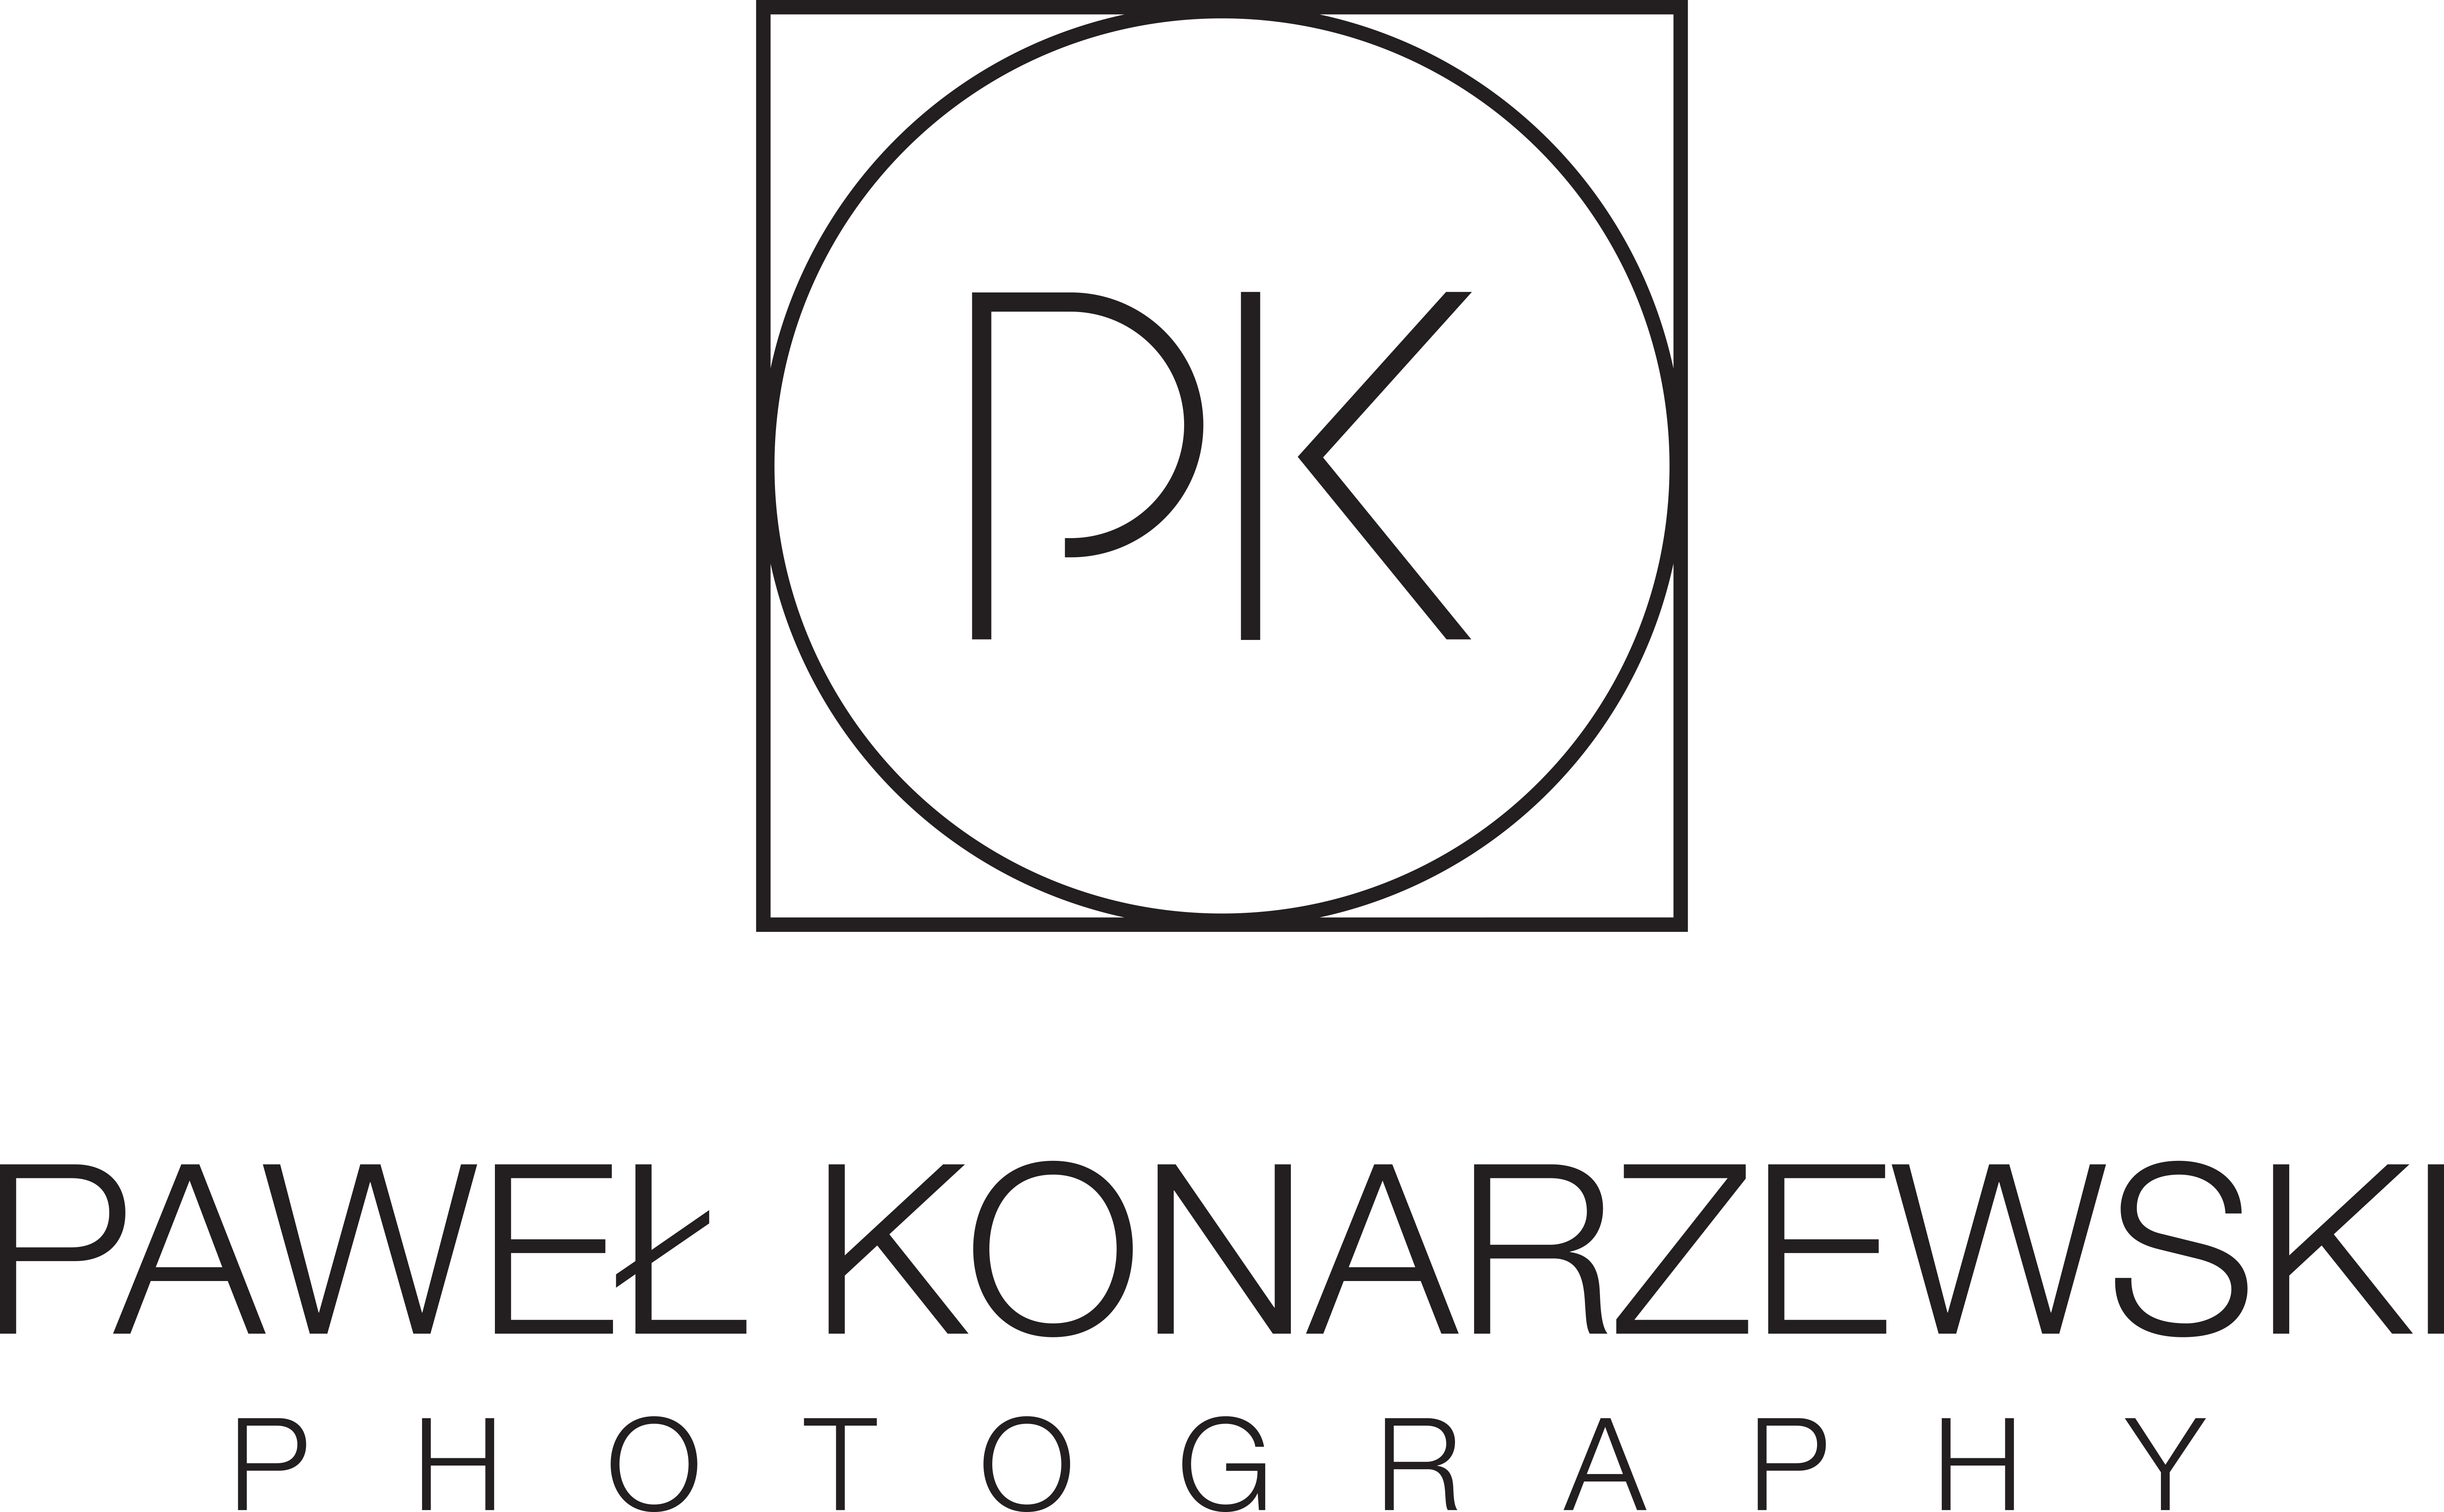 Pawel Konarzewski Photography logo